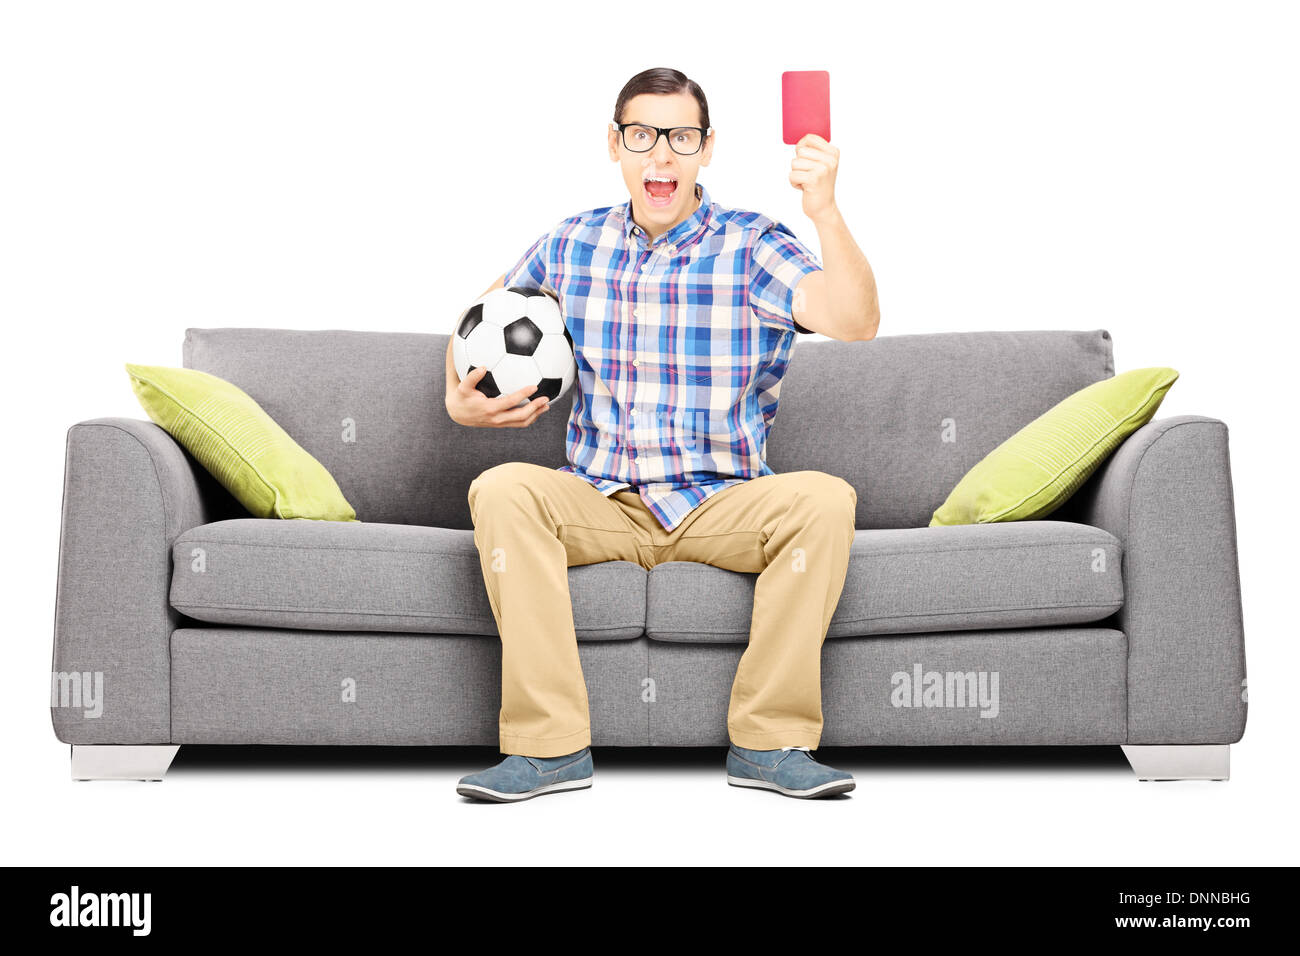 Les jeunes furieux fan de football sitting on sofa holding ball et donner une carte rouge Banque D'Images